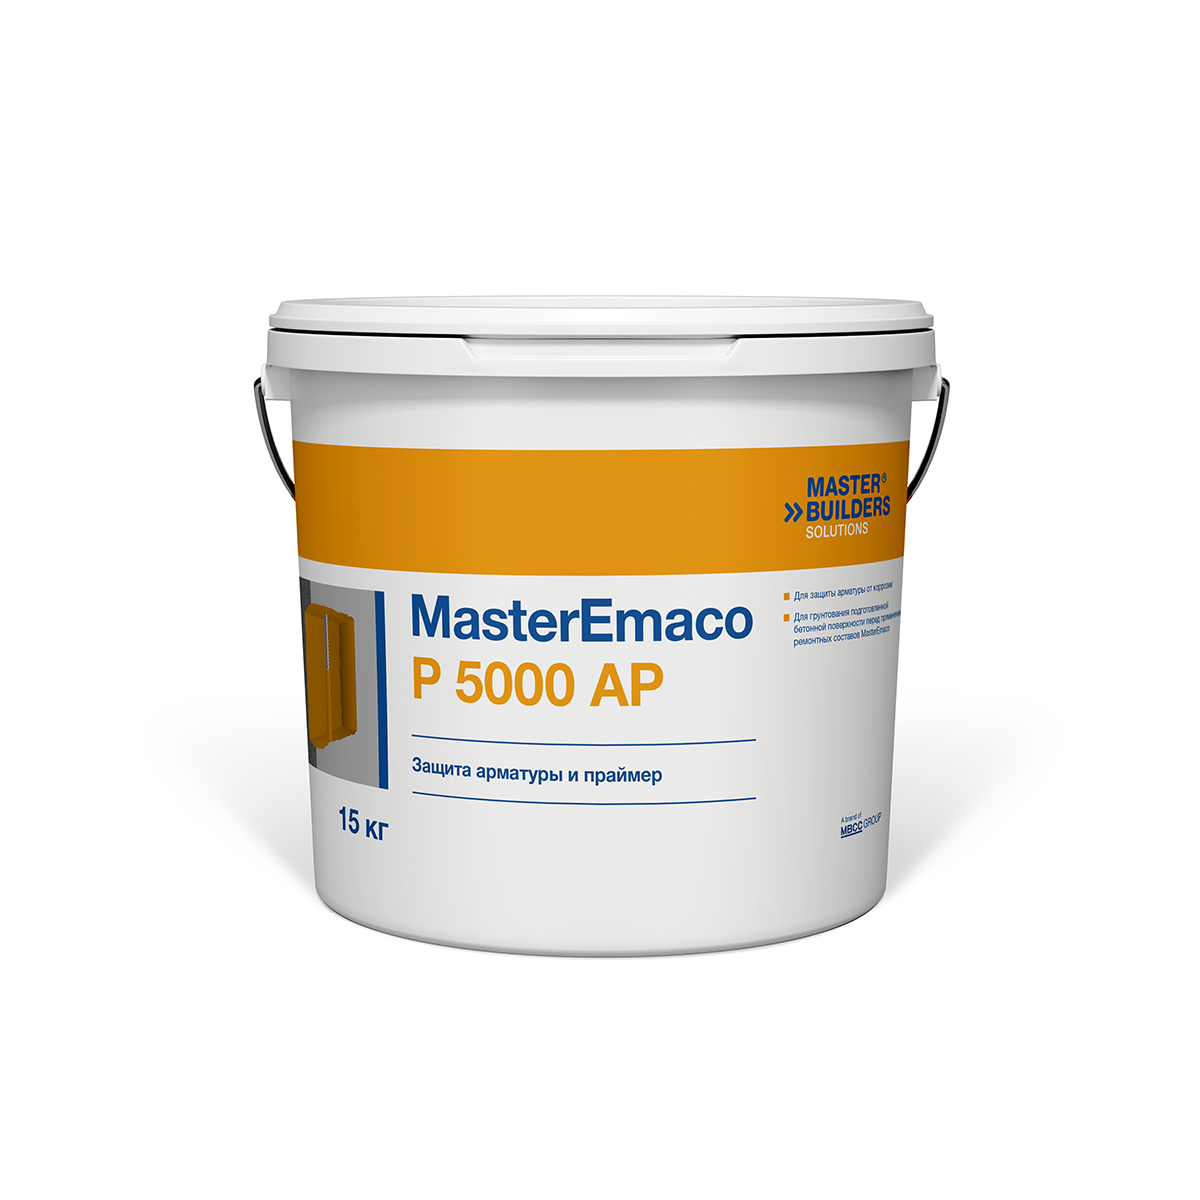 MasterEmaco P 5000 AP